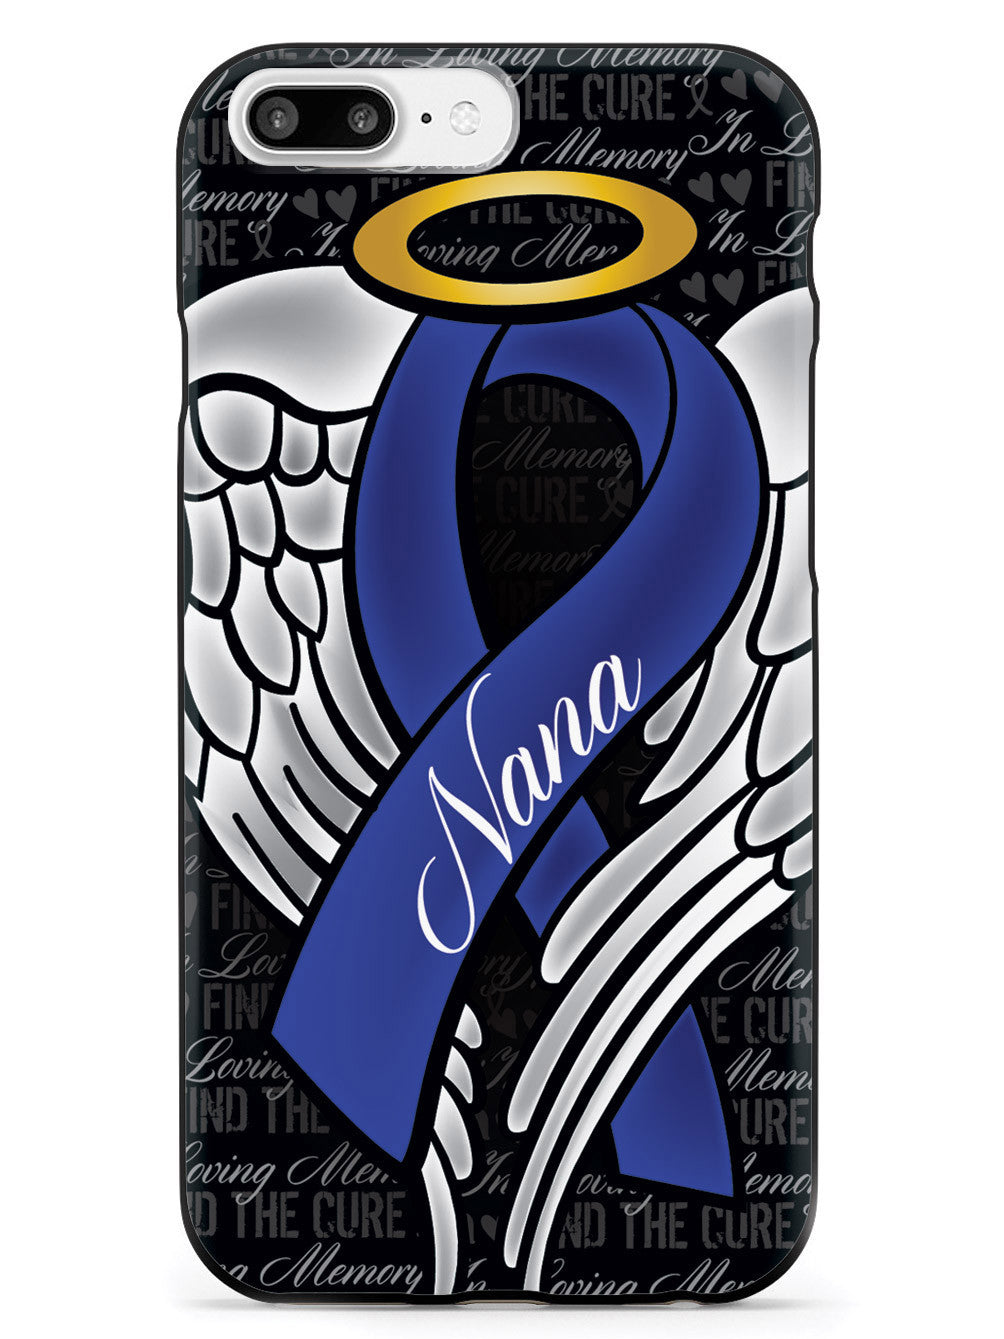 In Loving Memory of My Nana - Blue Ribbon Case